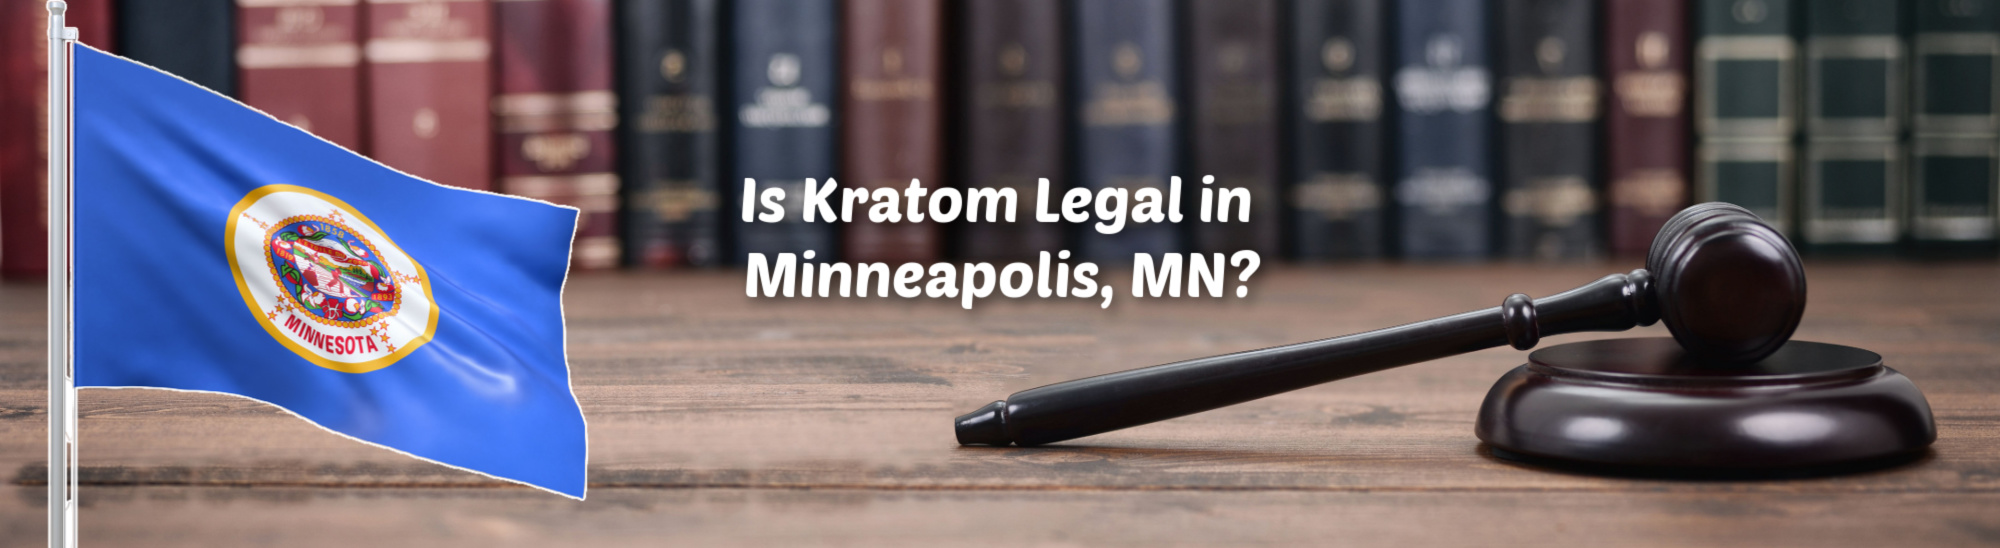 Best Places to Buy Kratom in Minneapolis, Minnesota